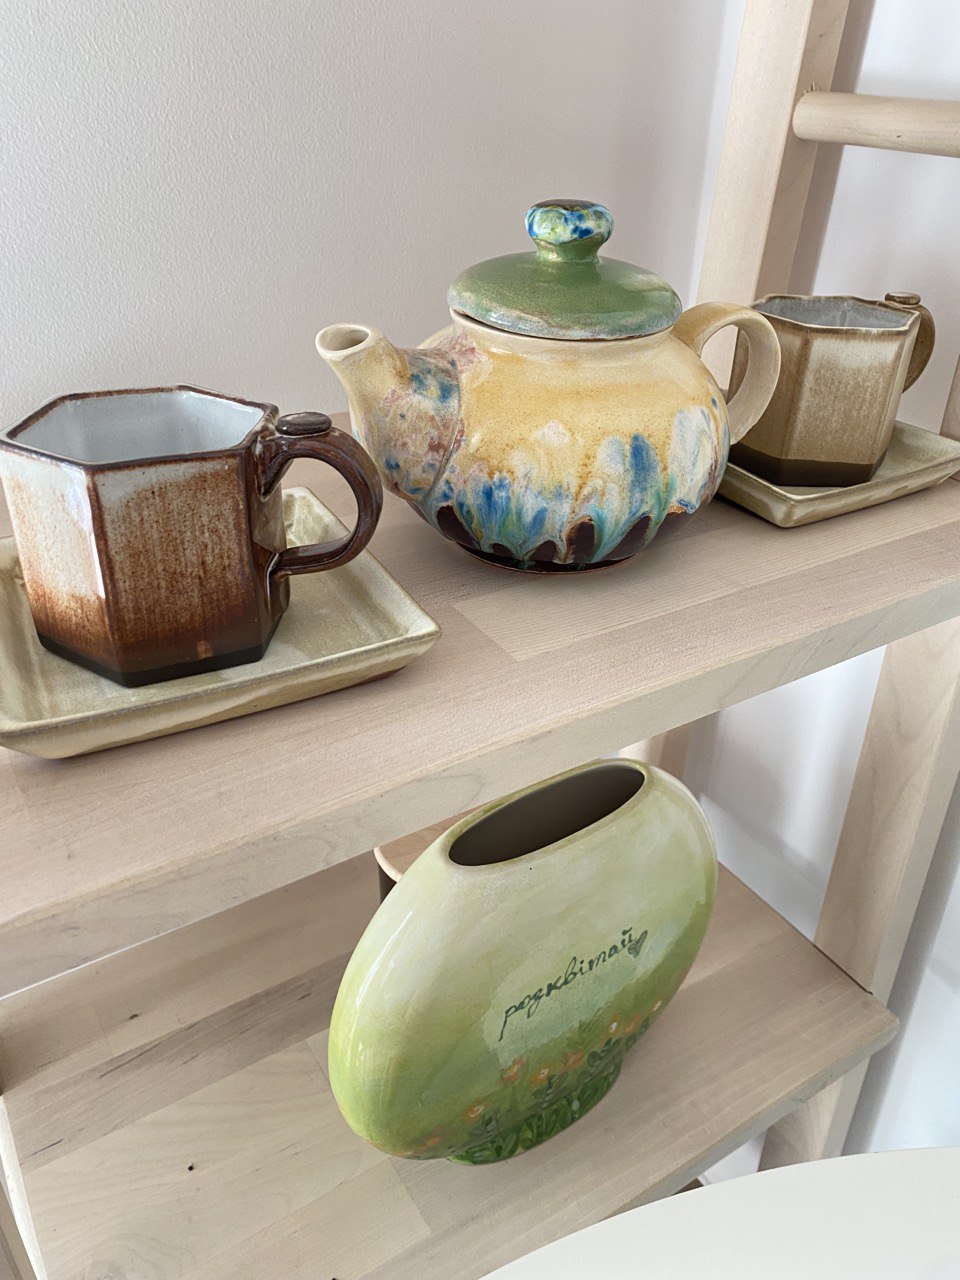 Ceramics on a shelf